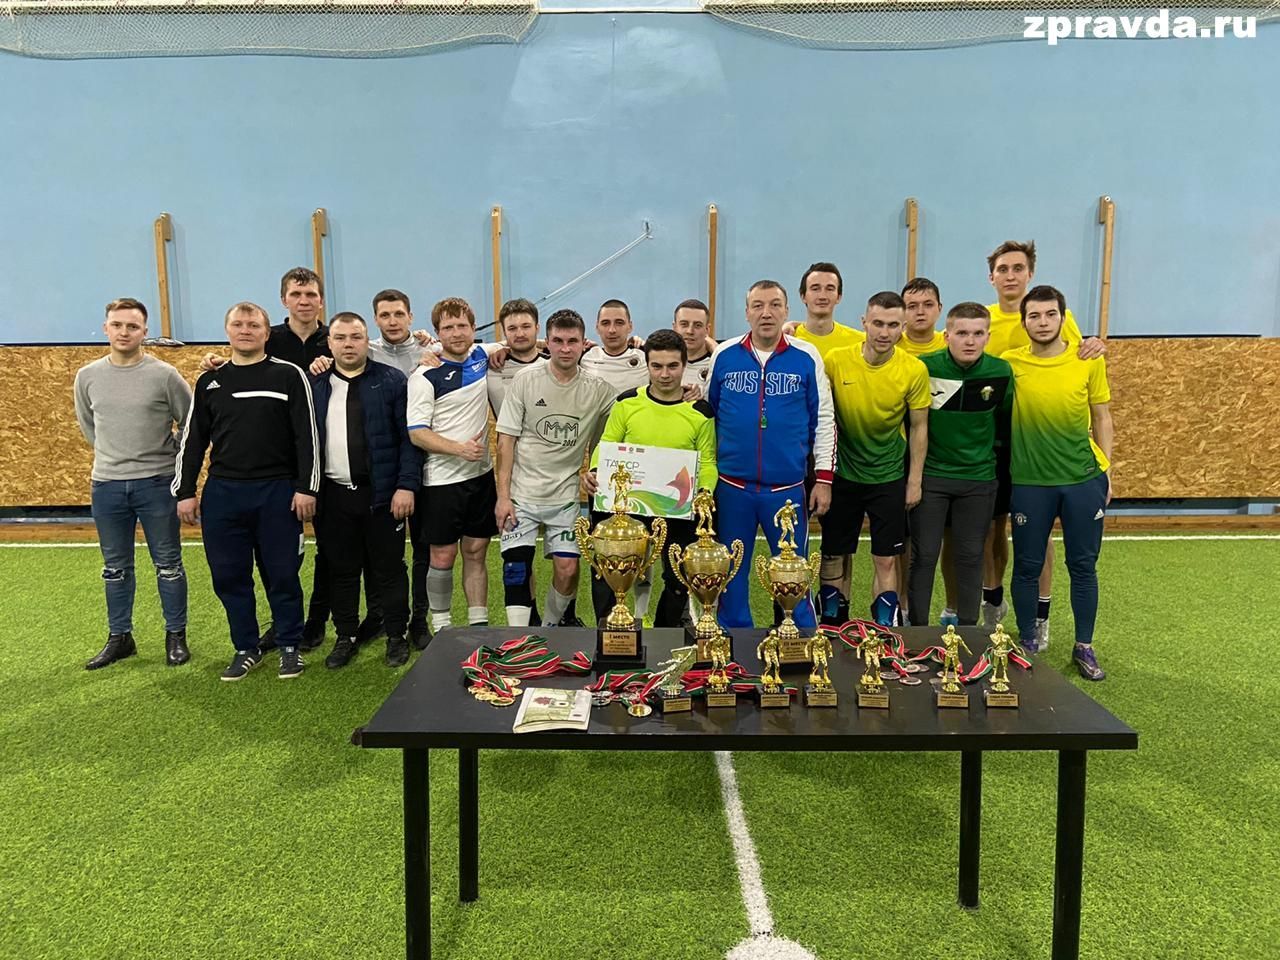 Турнир по мини-футболу прошёл в Васильево